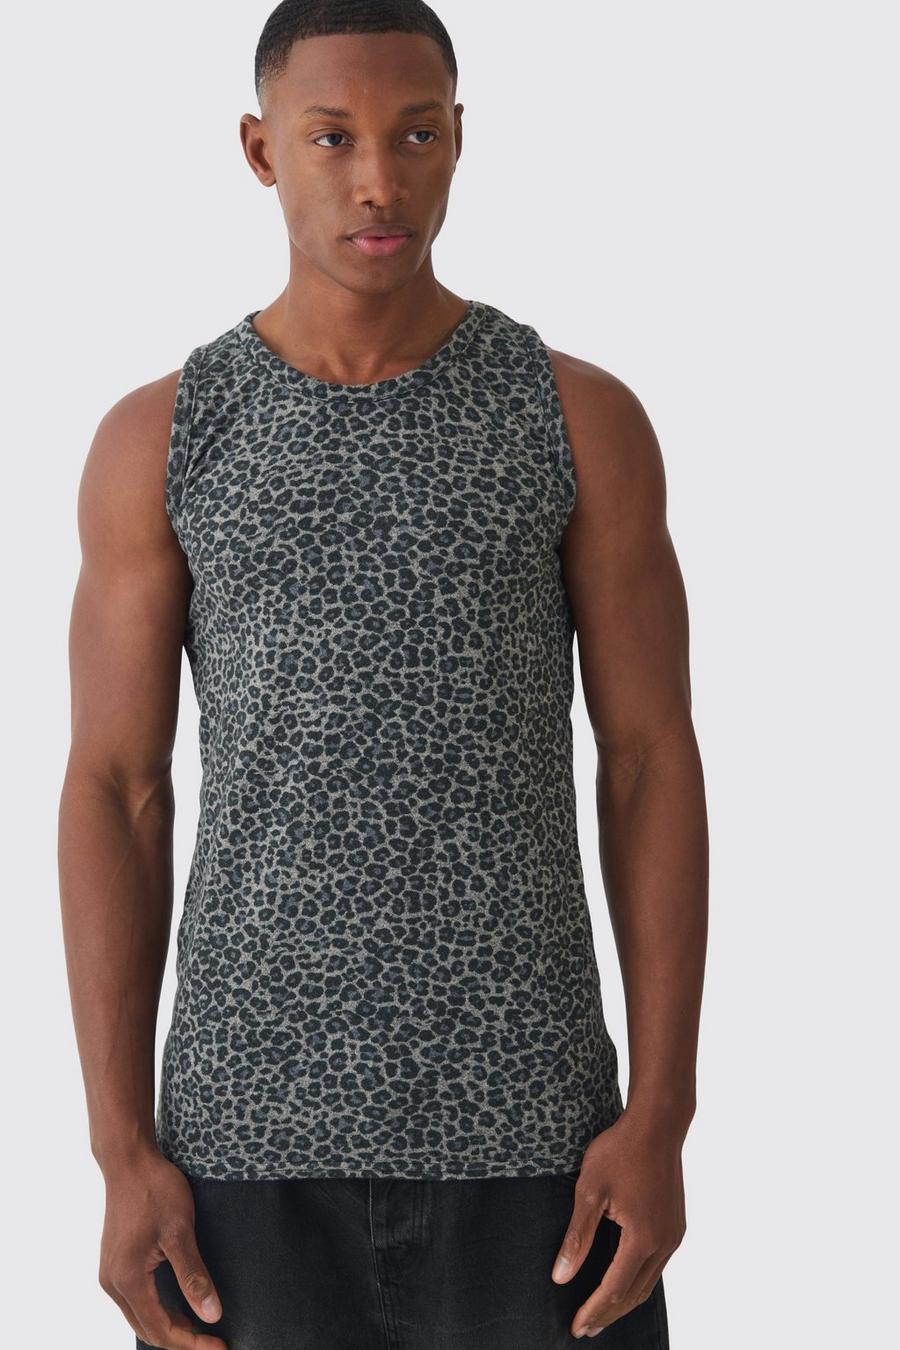 Brown Muscle Fit Leopard Print Vest